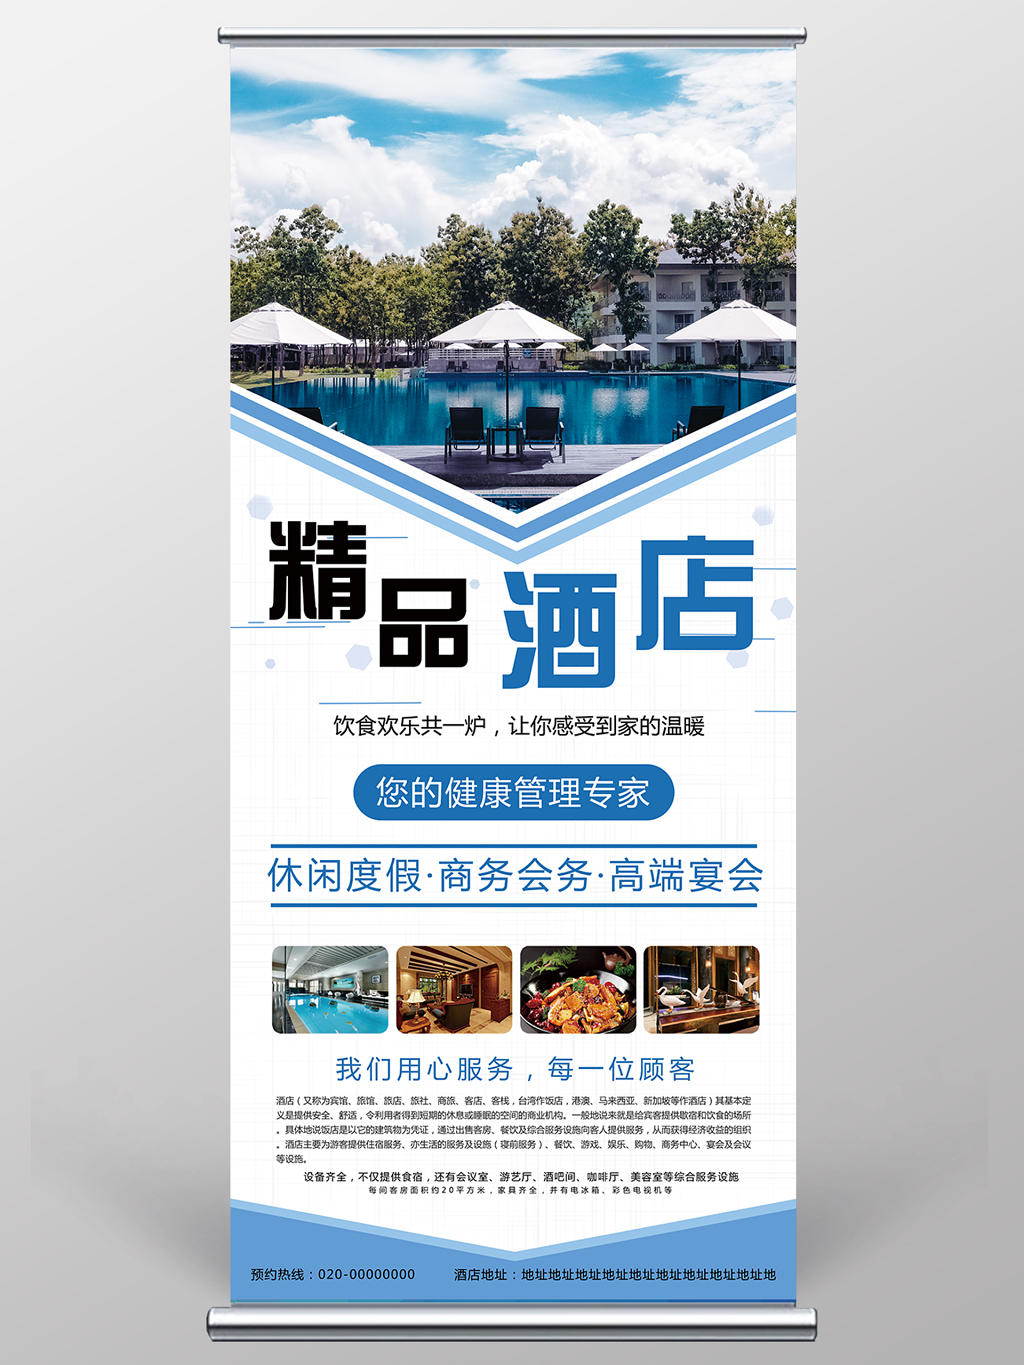 蓝色主题精品酒店广告宣传易拉宝展架设计